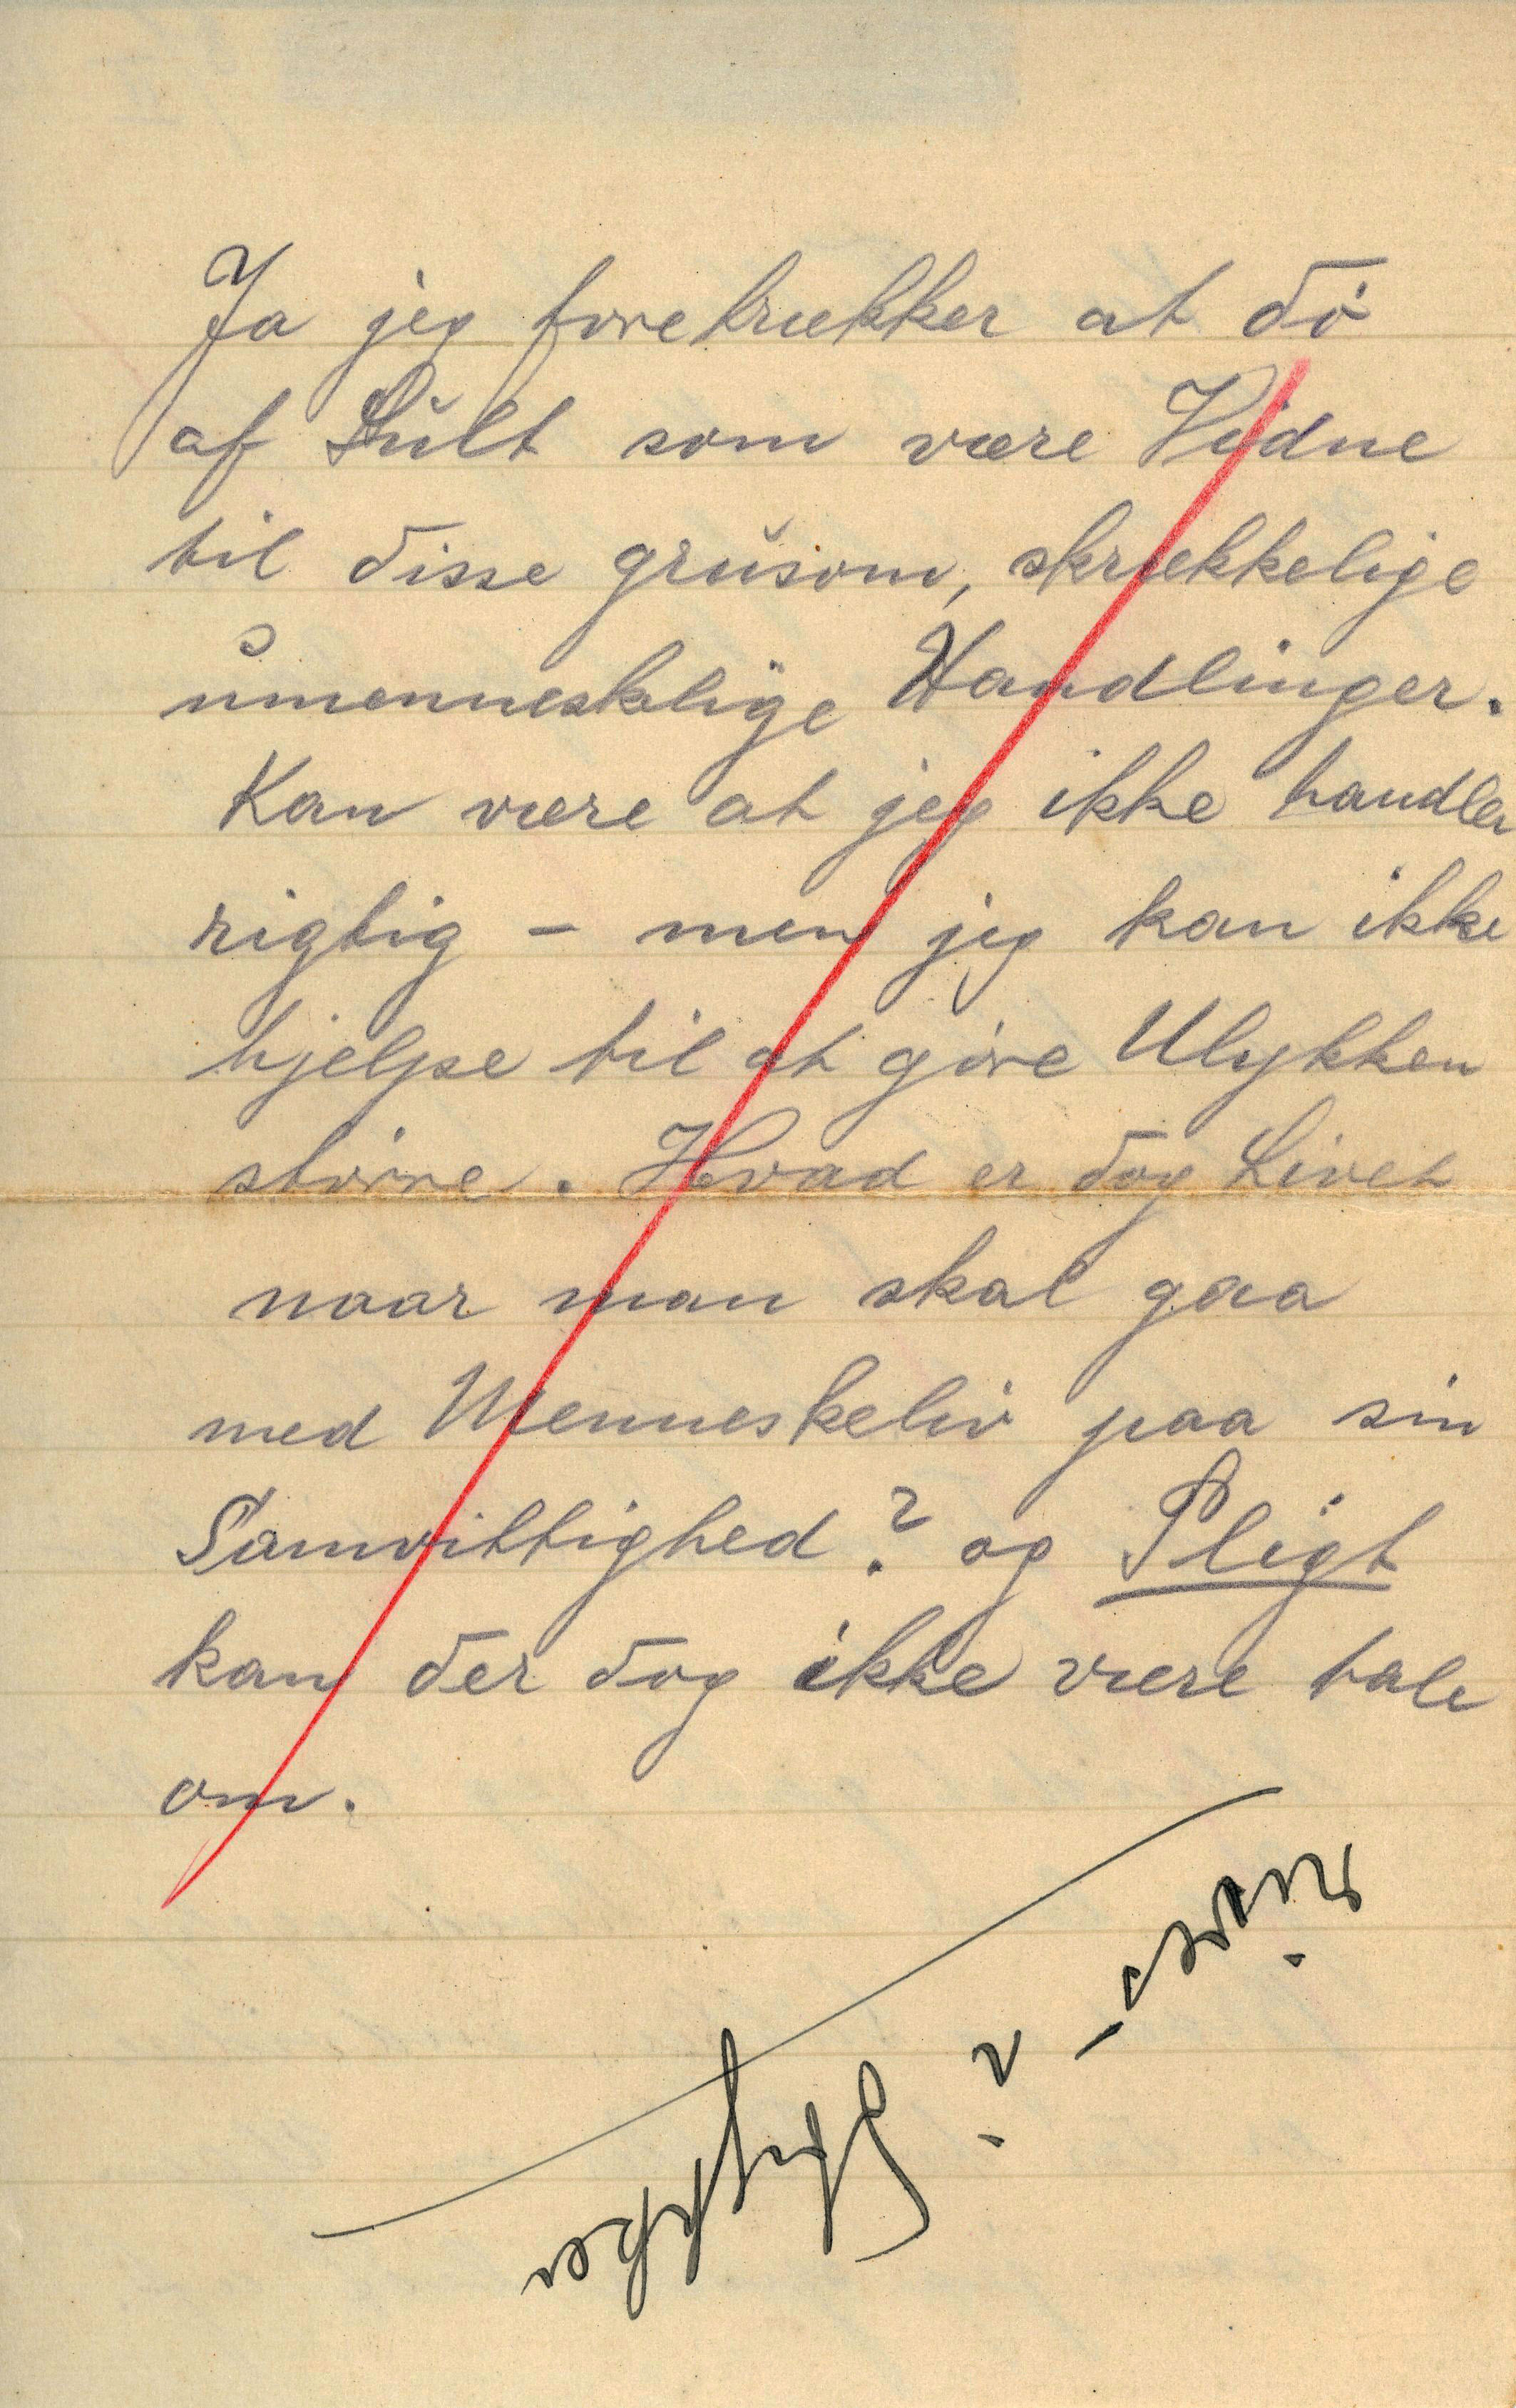 Et censureret brev fra en soldat ved fronten under første verdenskrig er en af de kilder, elever har arbejdet med i ’Arkivet i den åbne skole’. Foto: Kolding Stadsarkiv